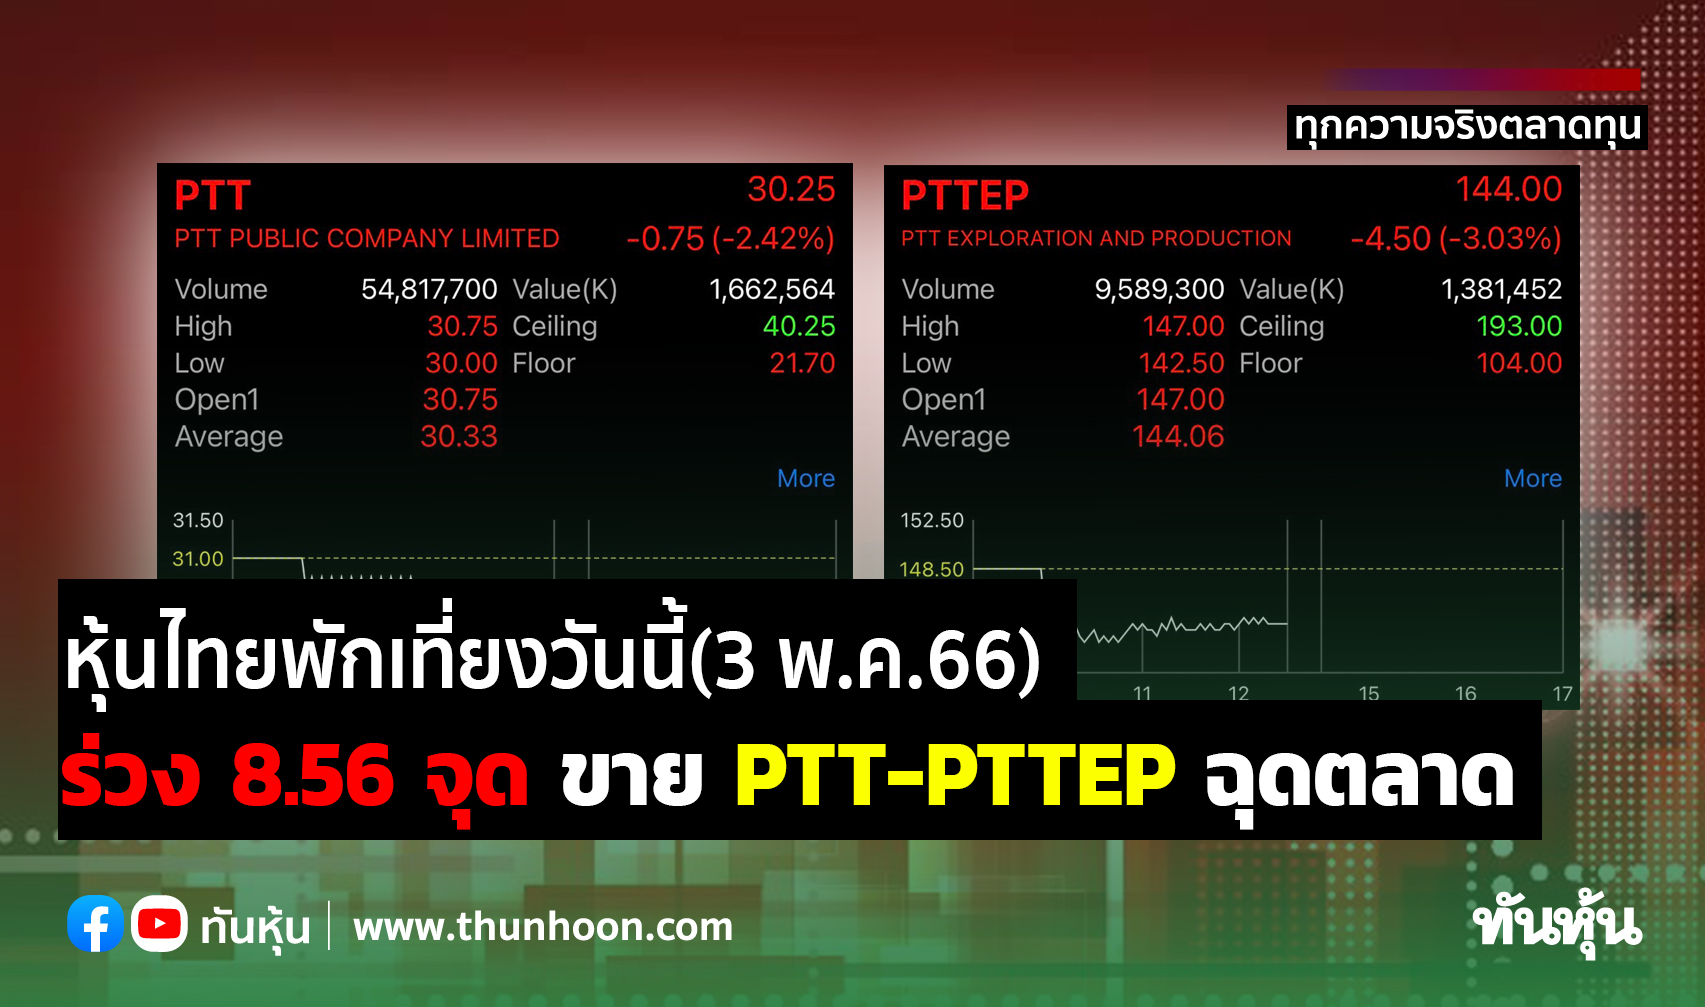 หุ้นไทยพักเที่ยงวันนี้(3 พ.ค.66) ร่วง 8.56 จุด ขาย Ptt-Pttep ฉุดตลาด -  Thunhoon